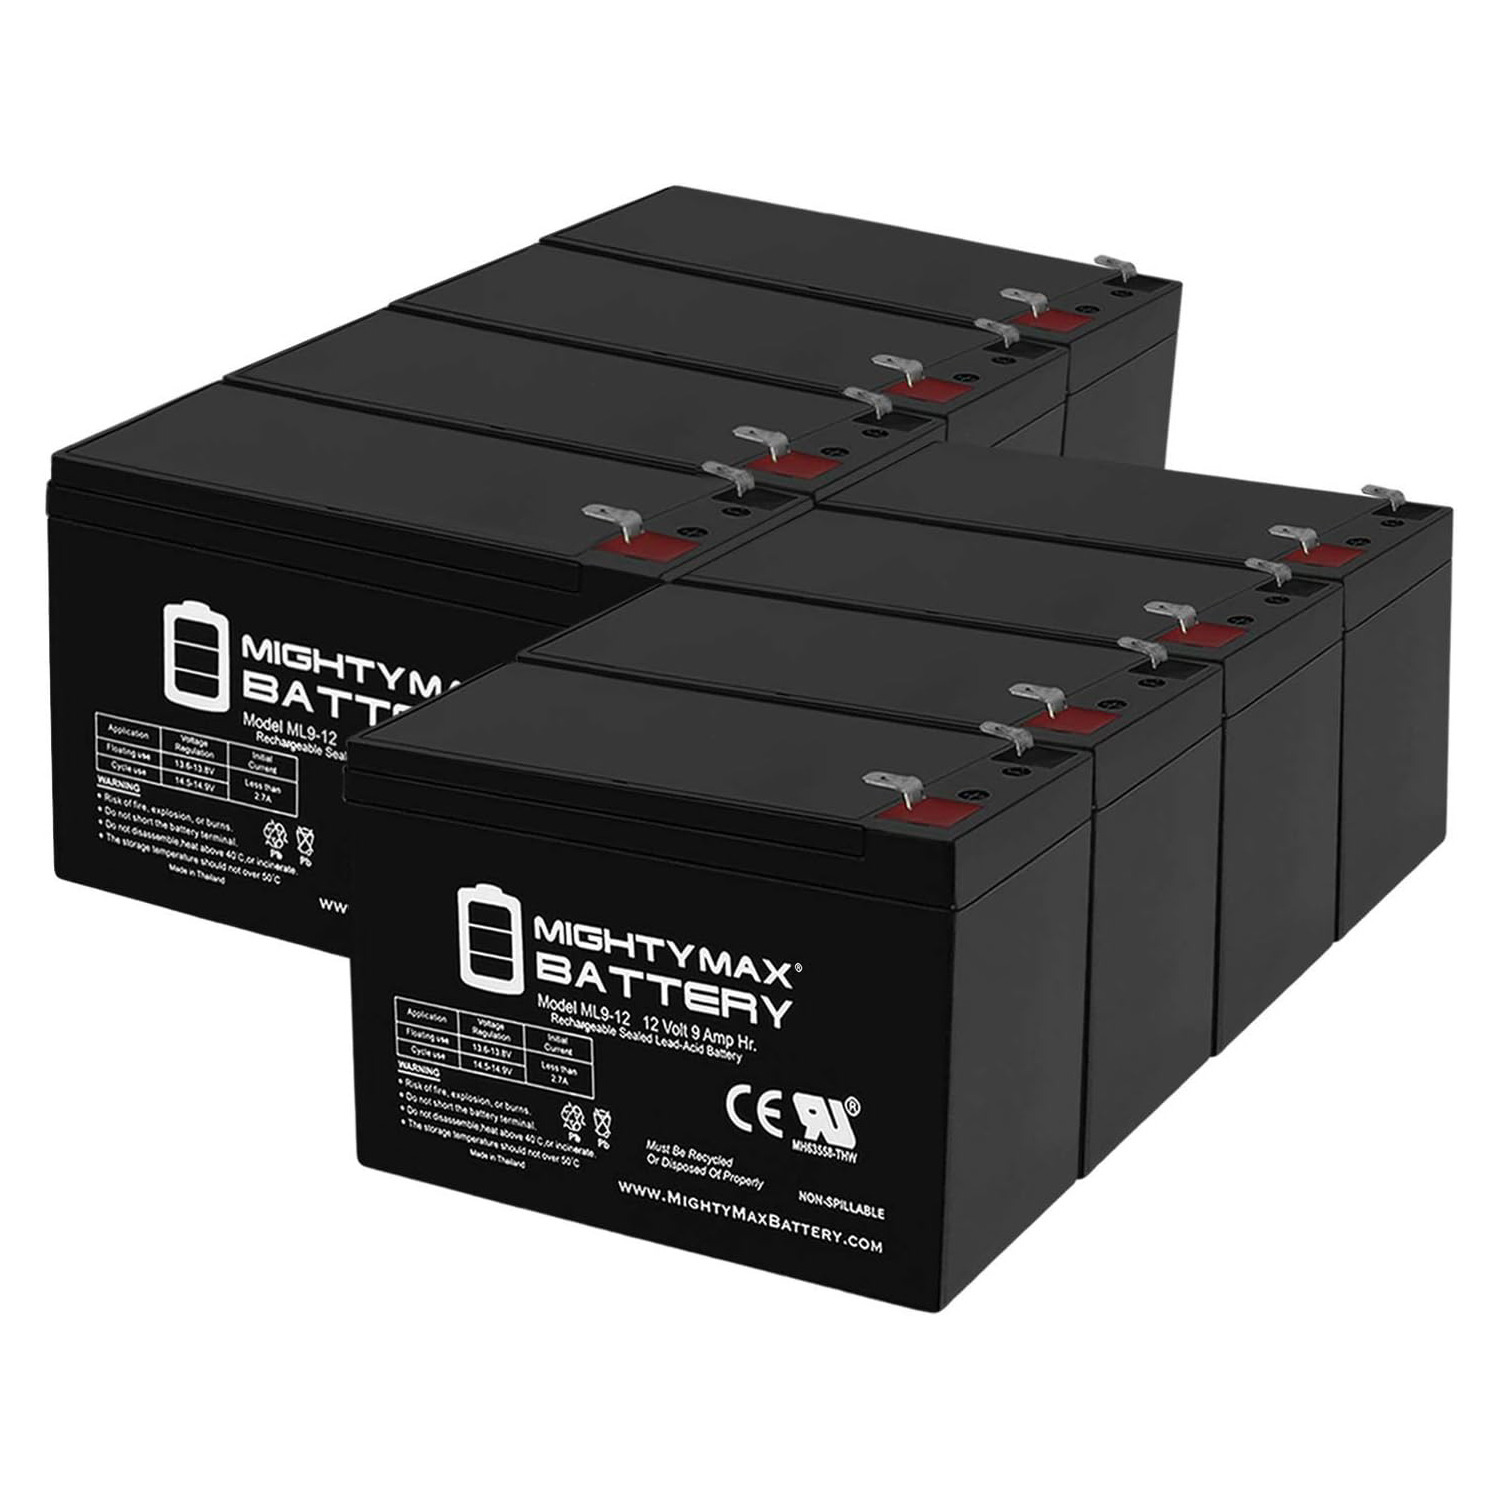 Altronix AL600ULX 12V, 9Ah Lead Acid Battery - 8 Pack